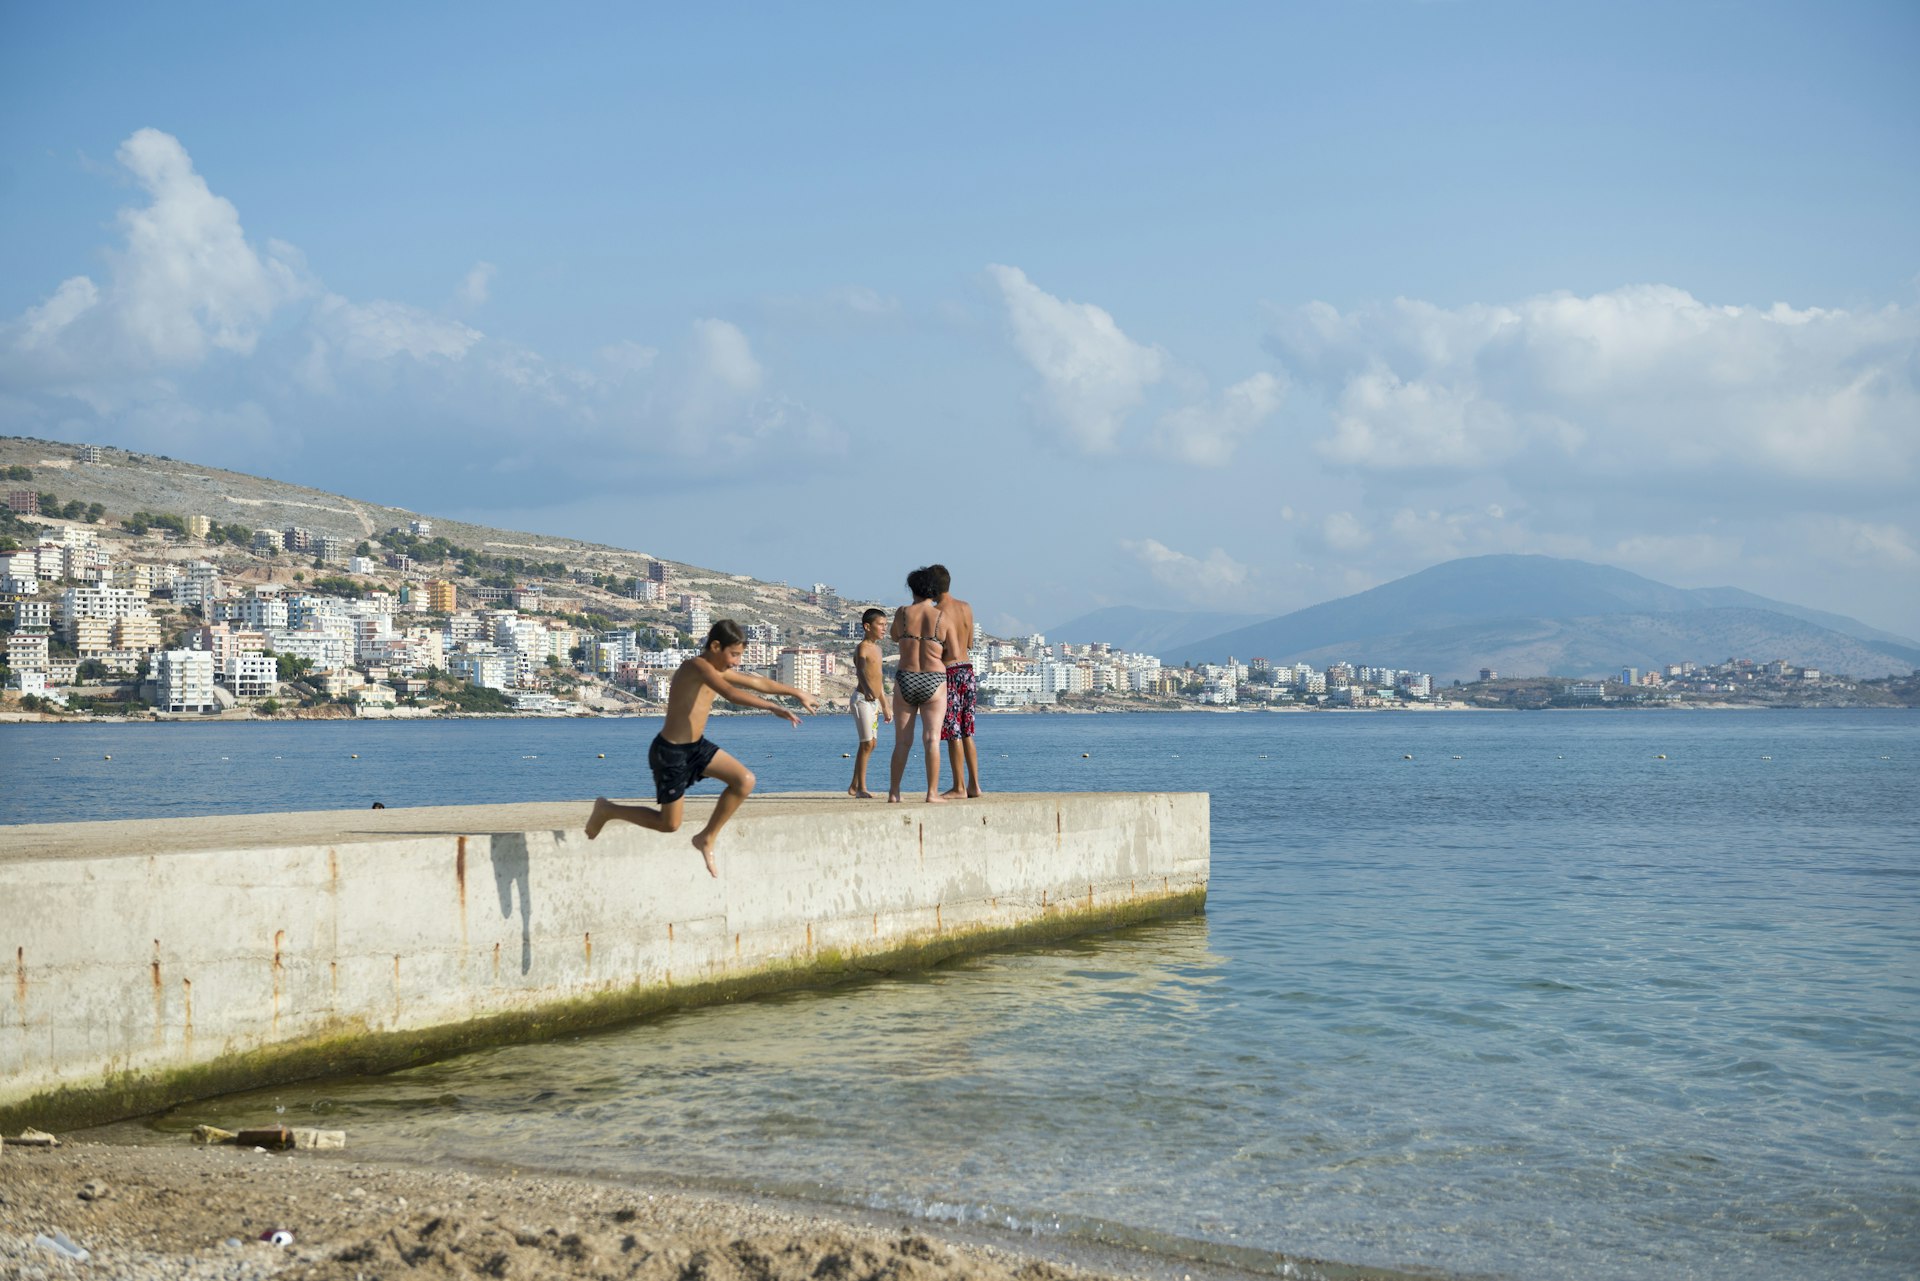 A boy jumps off a pier into the Mediterranean Sea in Sarande (Saranda), Albania 